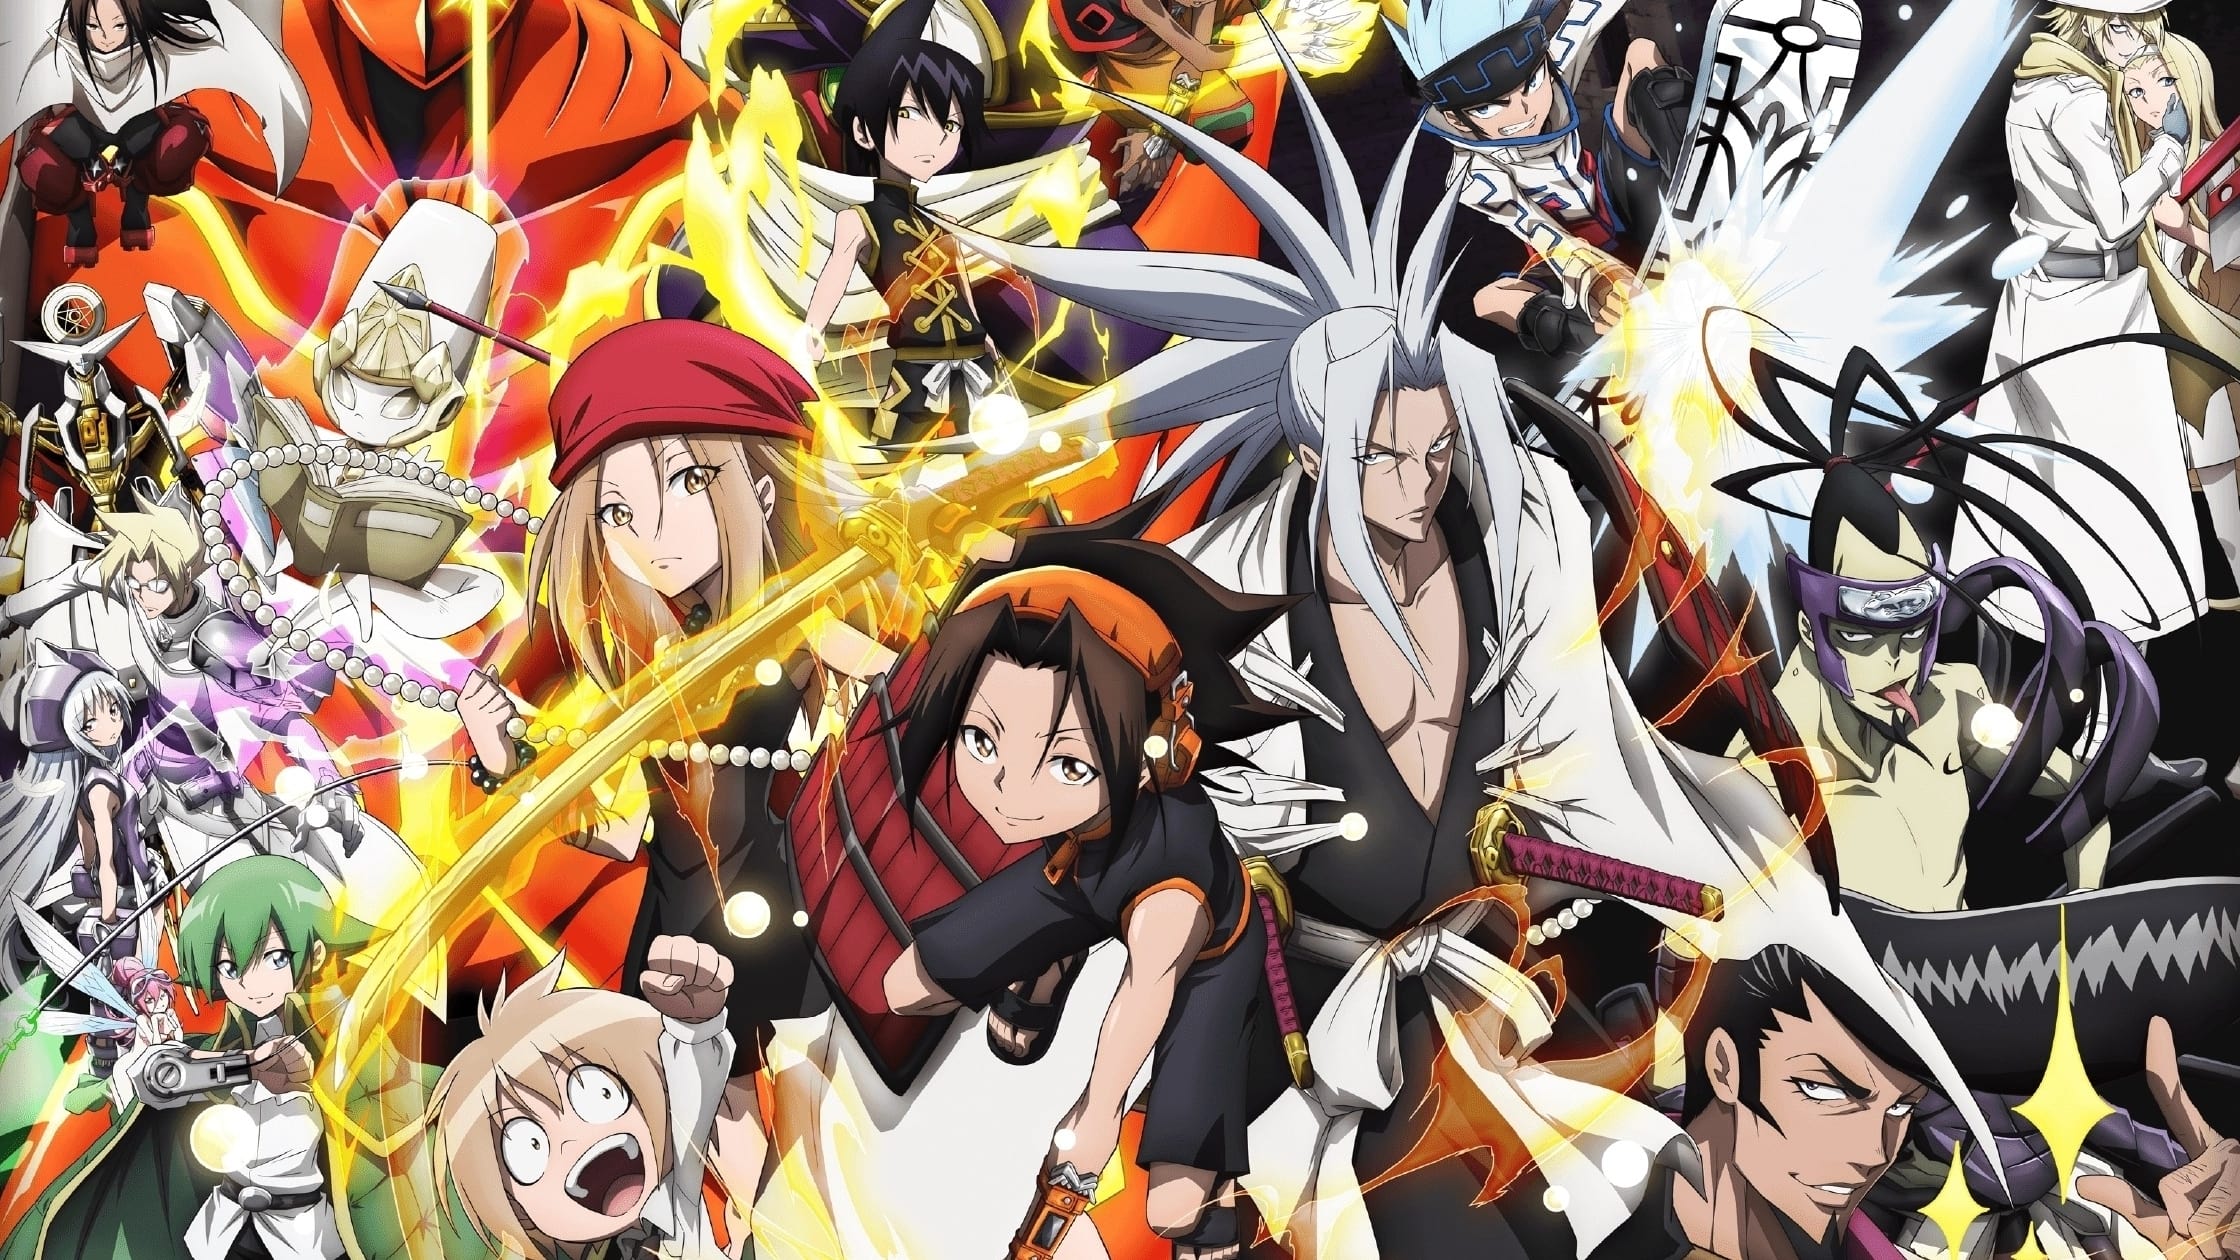 Band saji Performs New Shaman King Animes 3rd Ending Theme  News  Anime  News Network